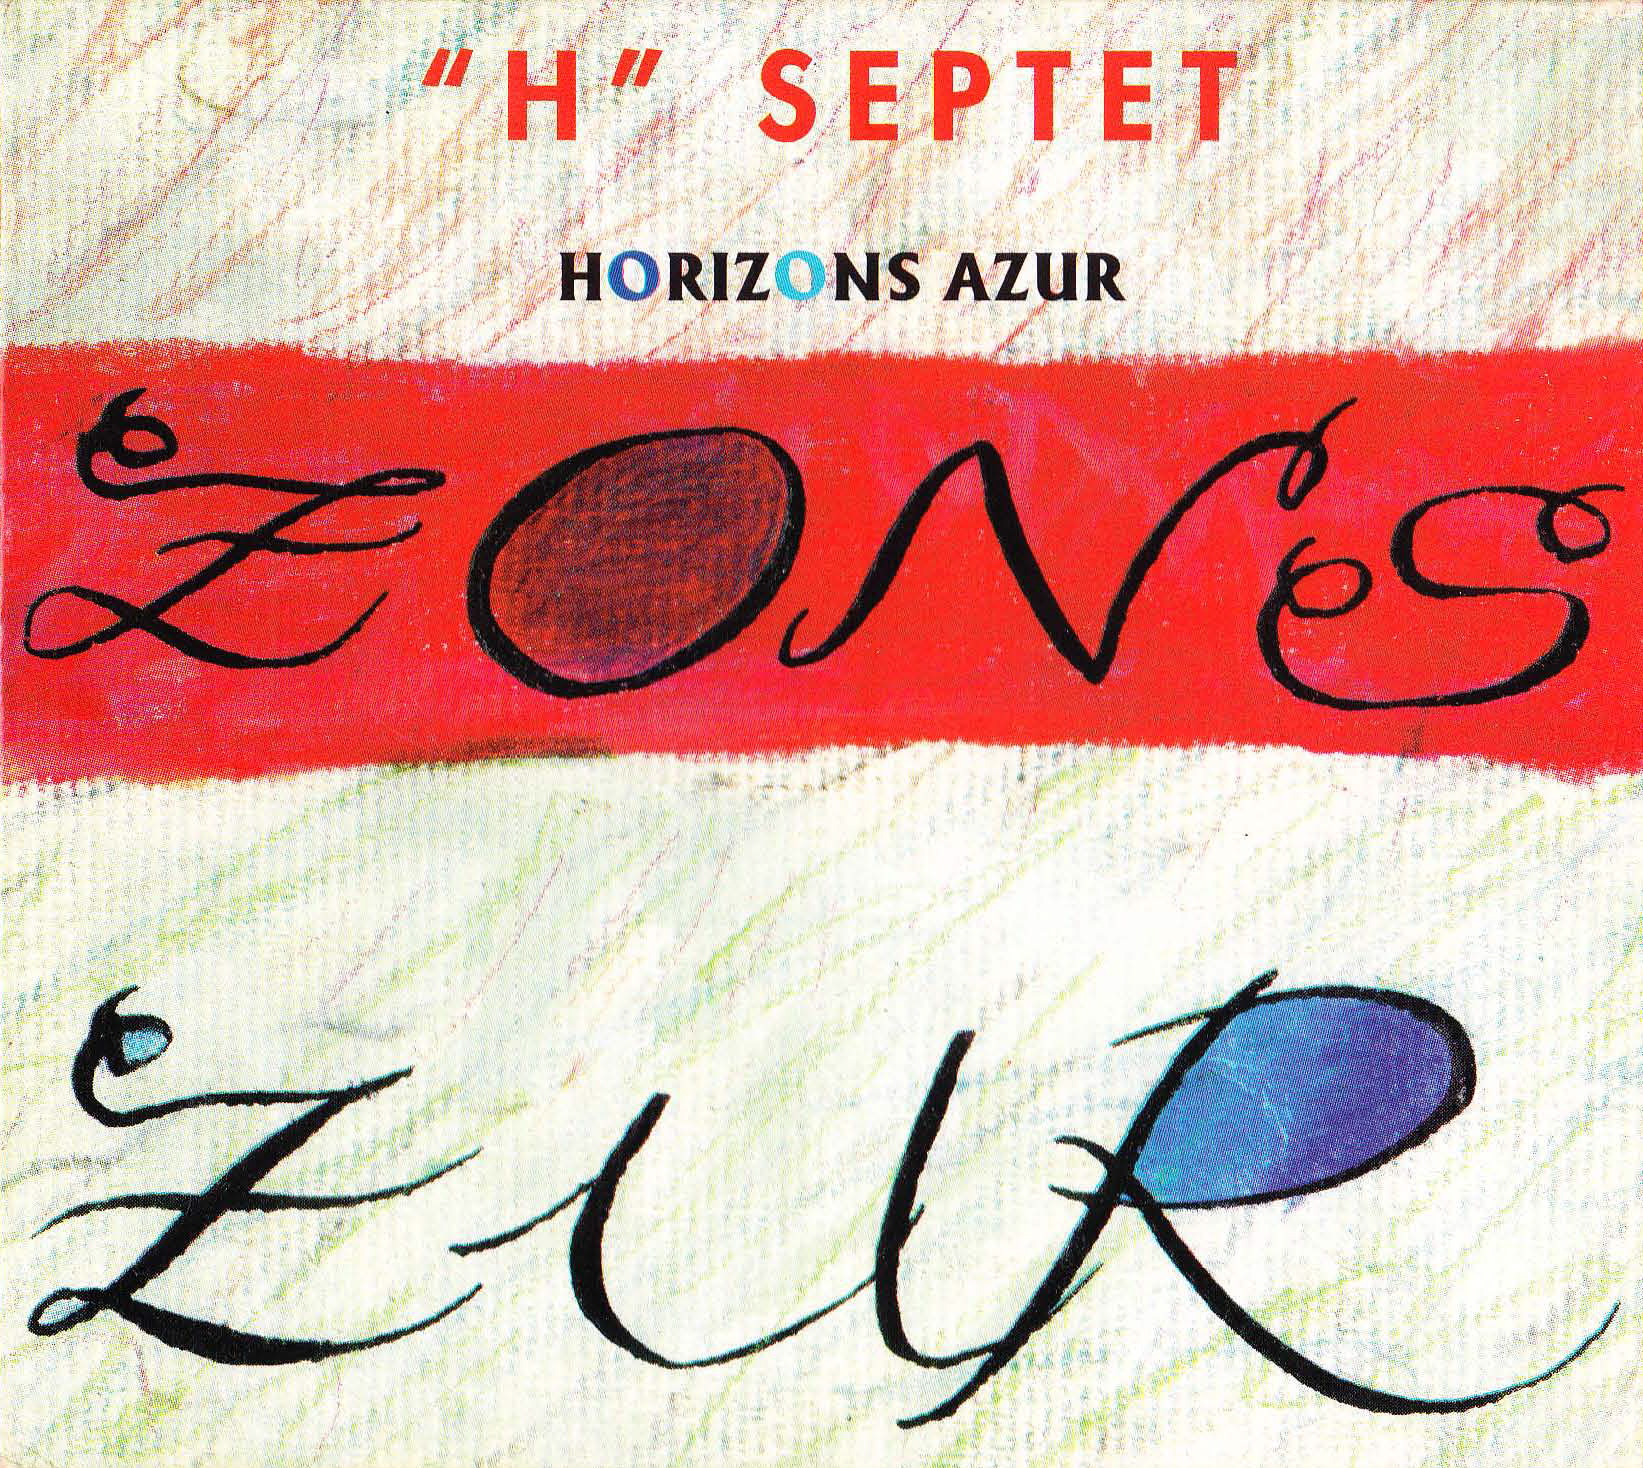 Pirly Zurstrassen Septet H: “Horizon Azur” (‘94)